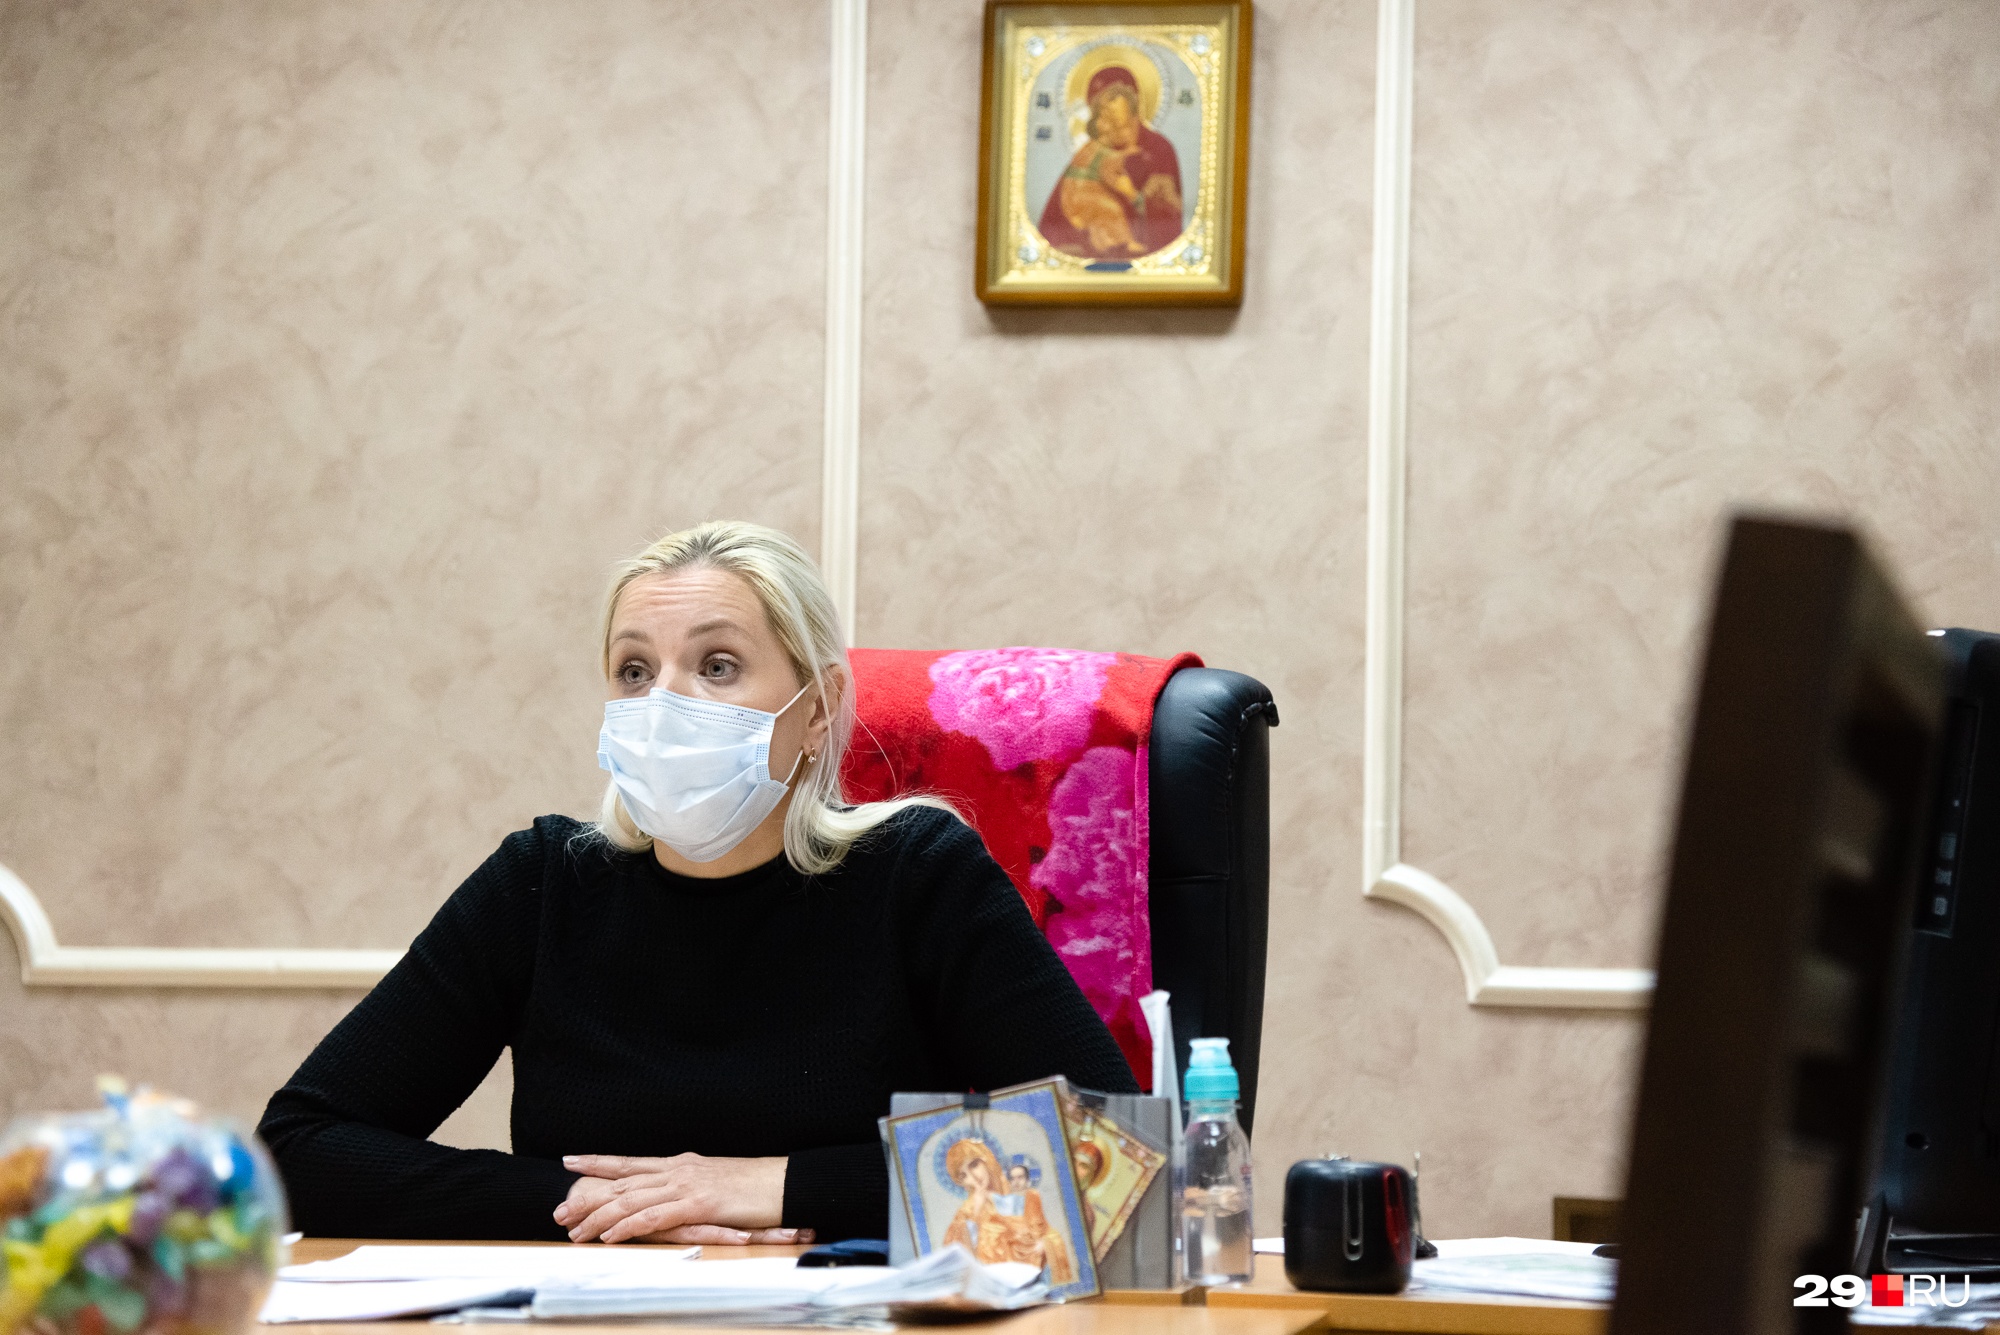 Наталья Никифорова говорит, что они могут договориться с проживающими в интернате — нужно только попросить заранее